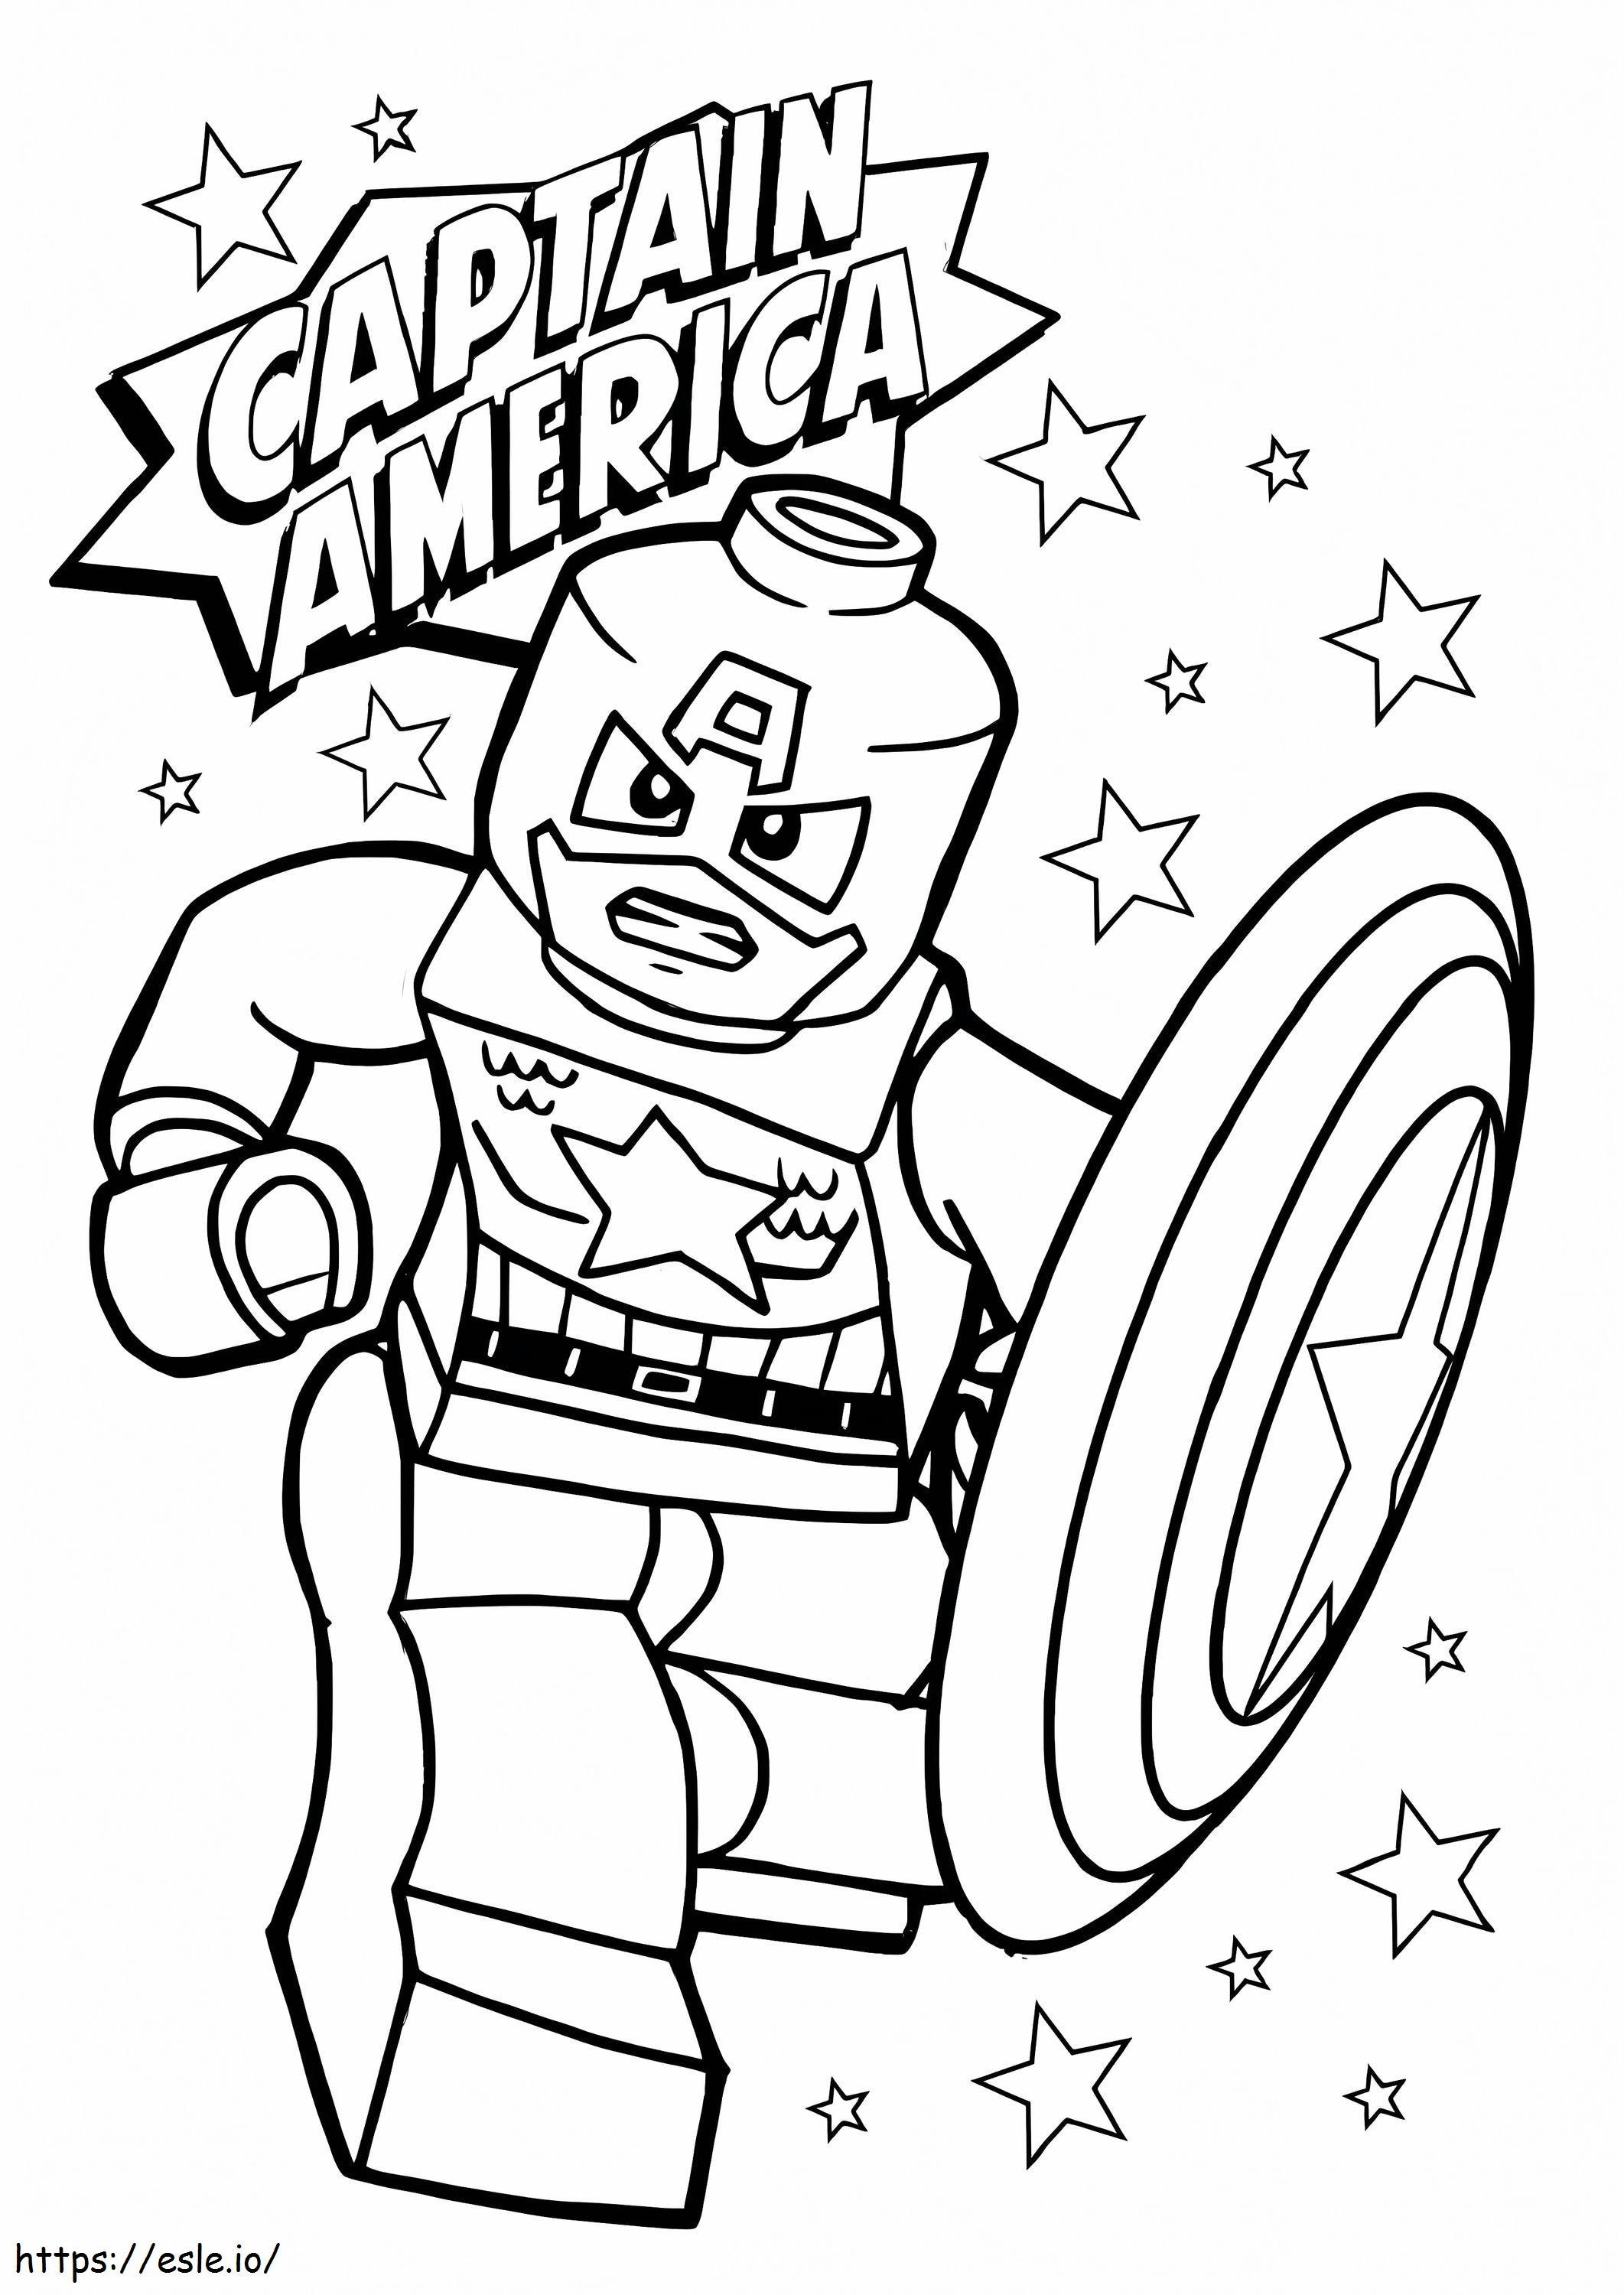 Capitán América enojado de Lego con estrella para colorear